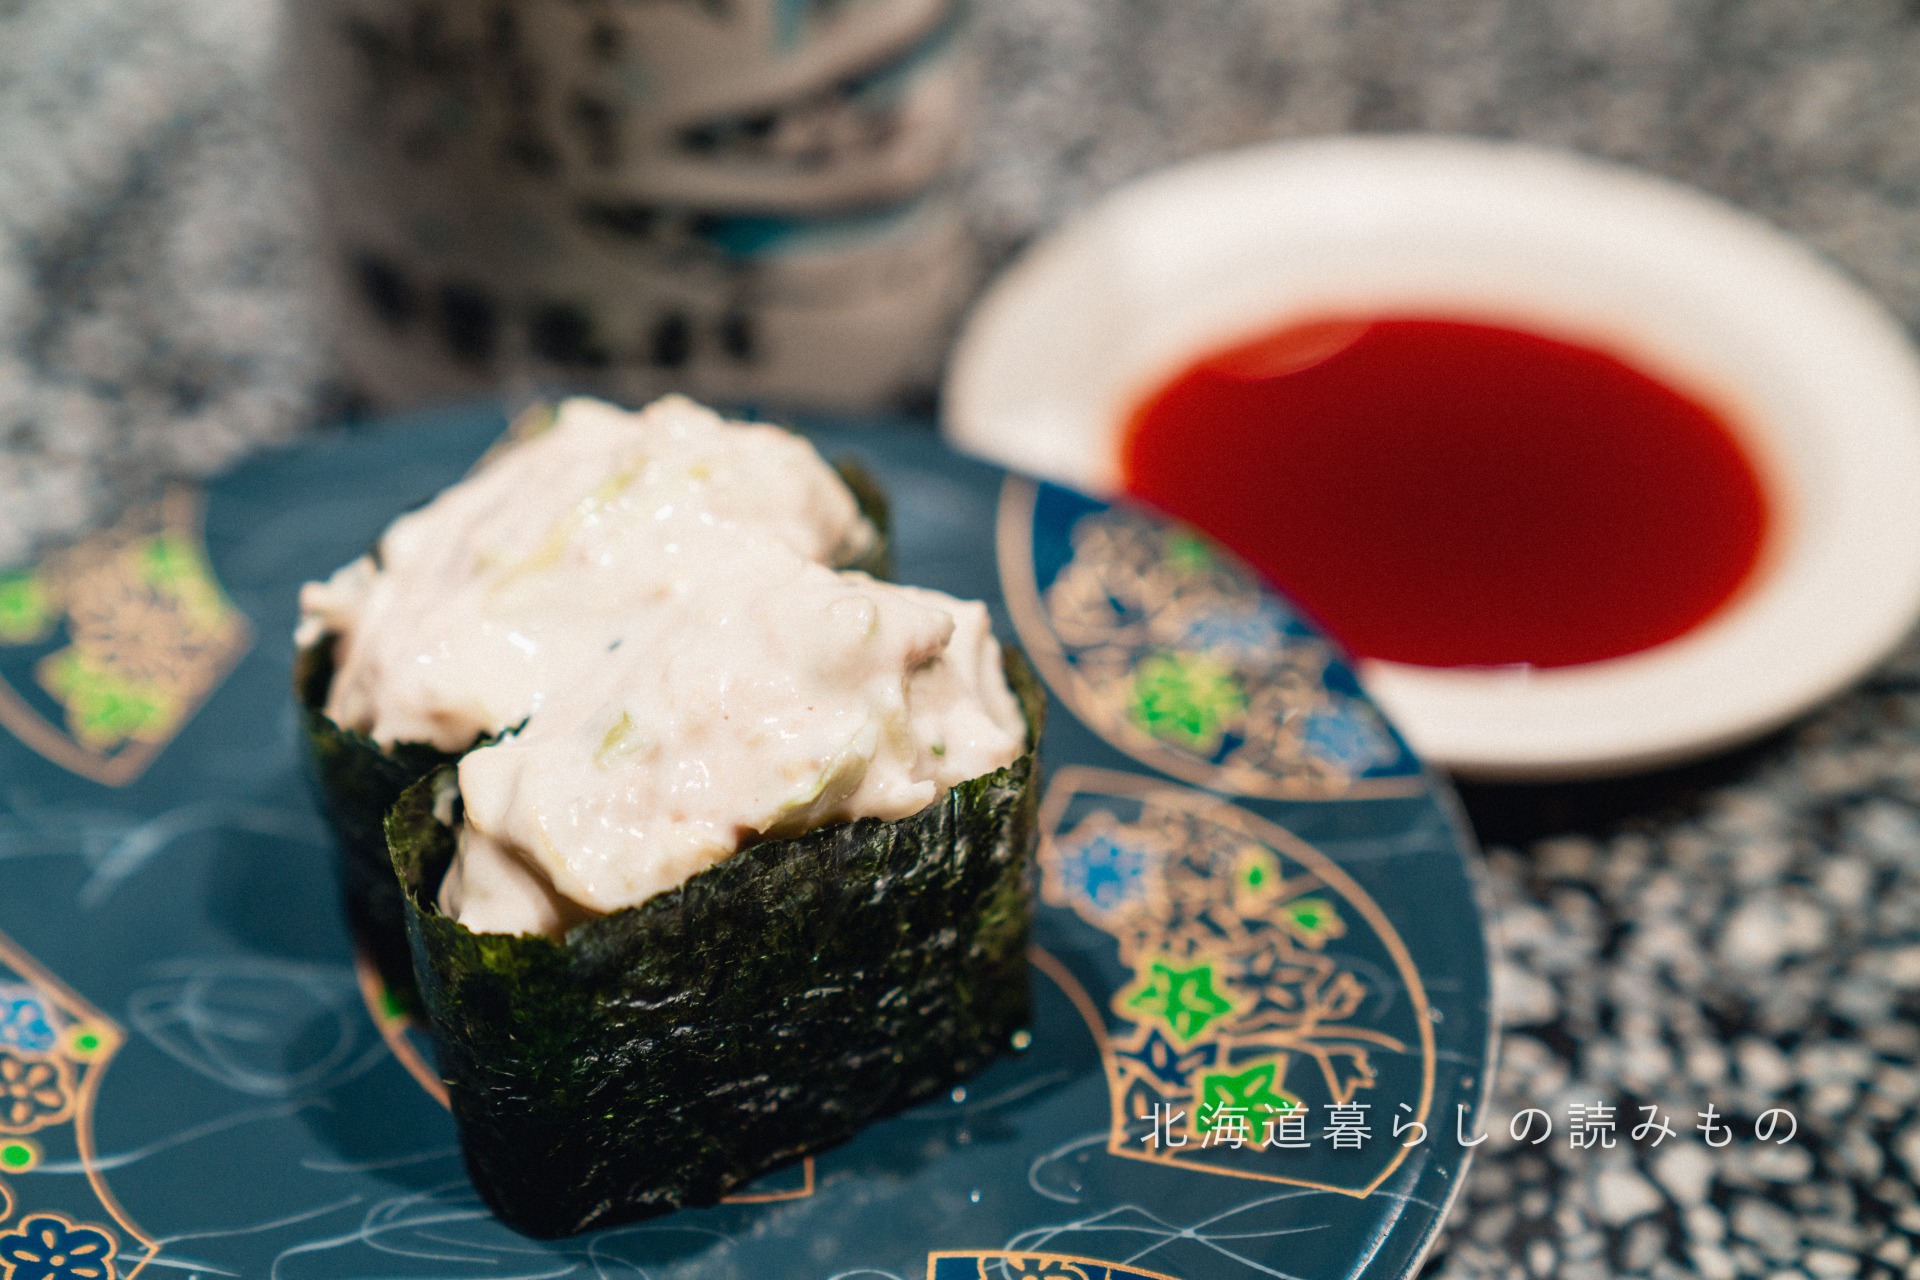 迴轉壽司根室花丸的菜單上的「Tuna Salad」